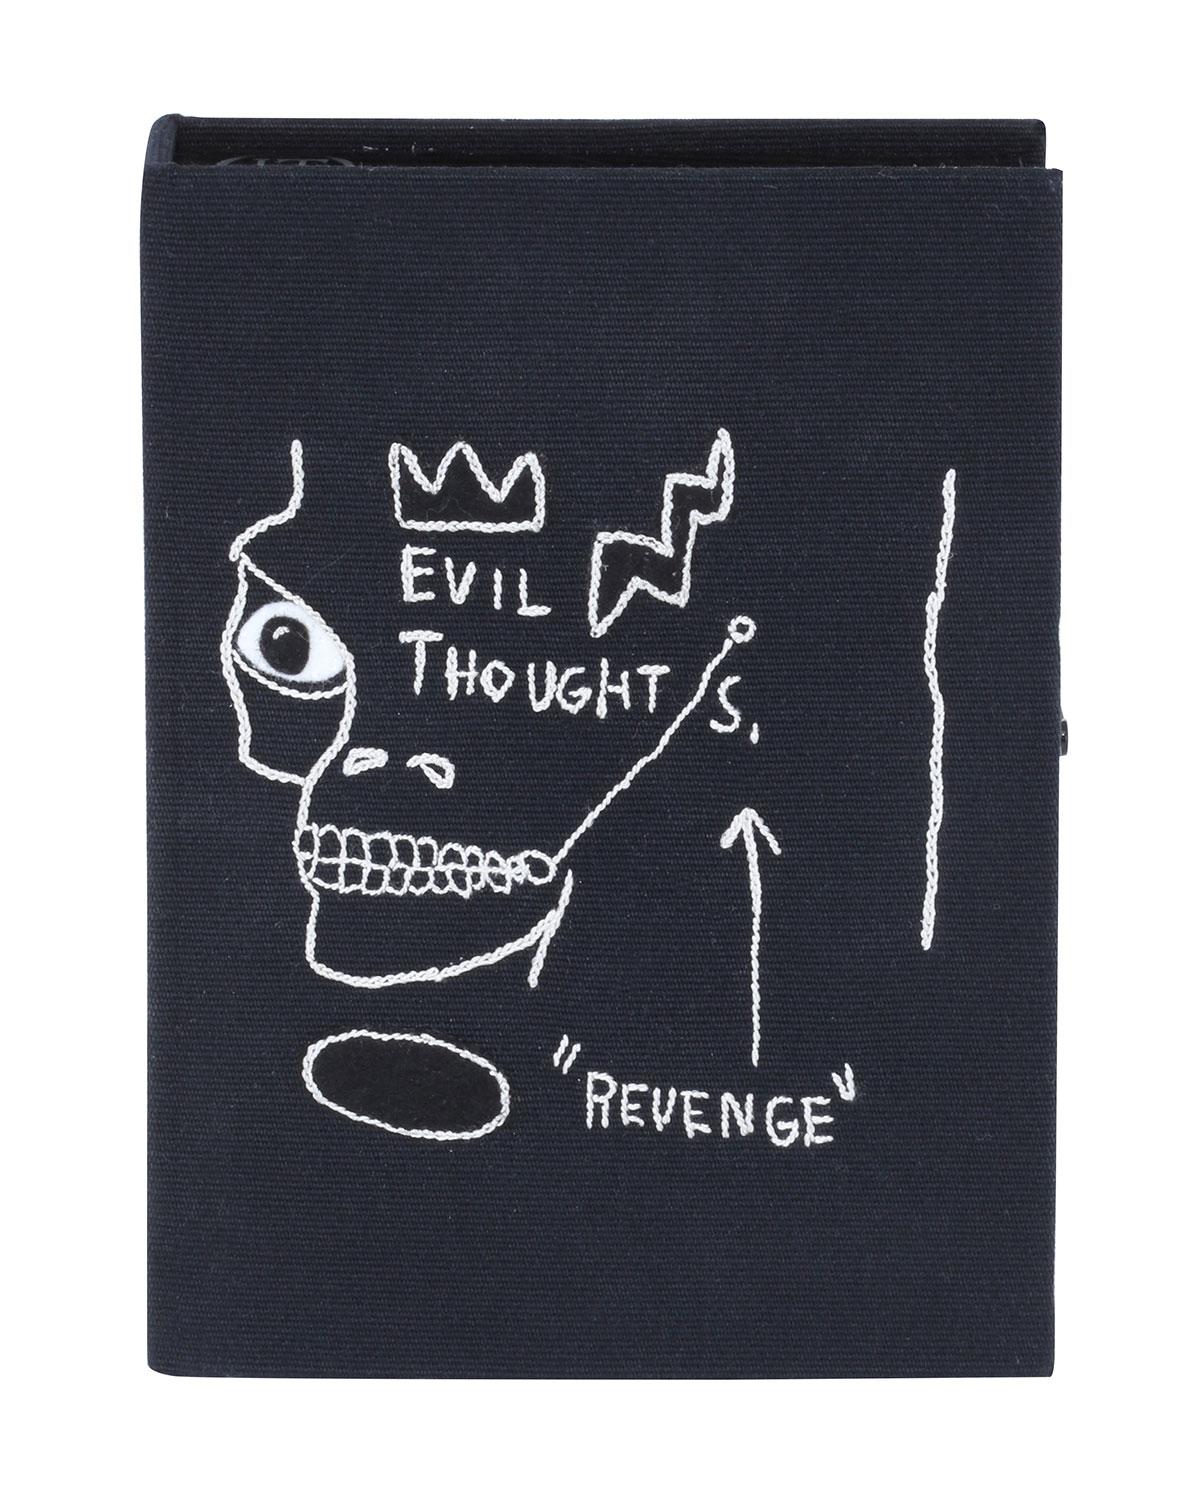 Black Le Comete embroidered book clutch bag